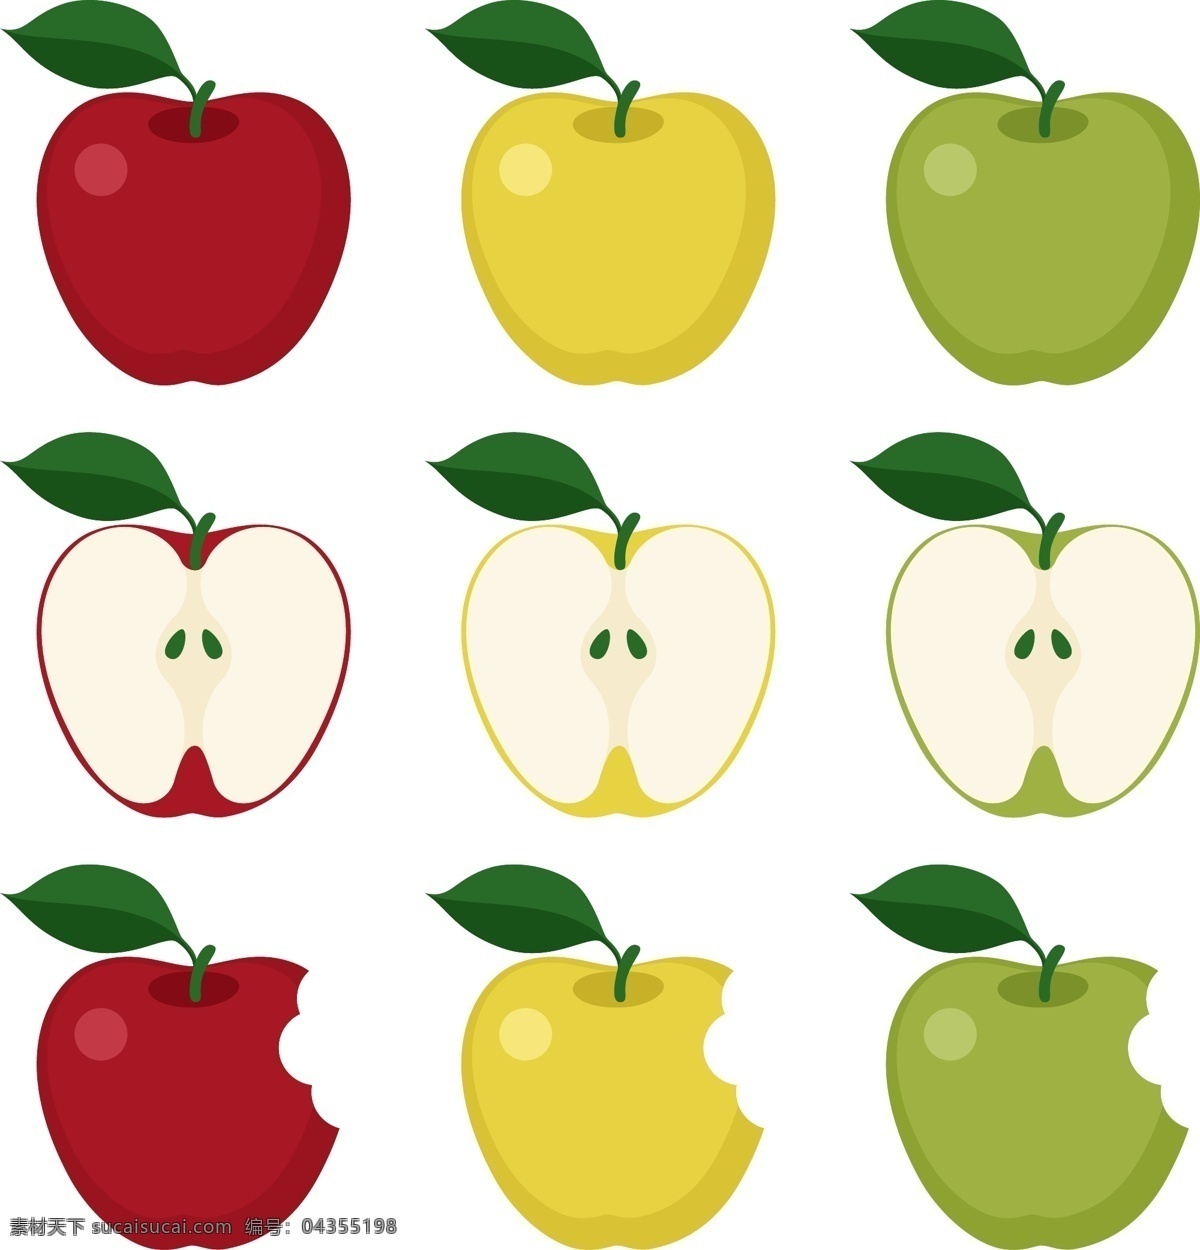 简约 卡通 平安夜 平安 果 平安果 苹果 红苹果 黄苹果 绿苹果 切开的苹果 半个苹果 绿叶苹果 咬一口苹果